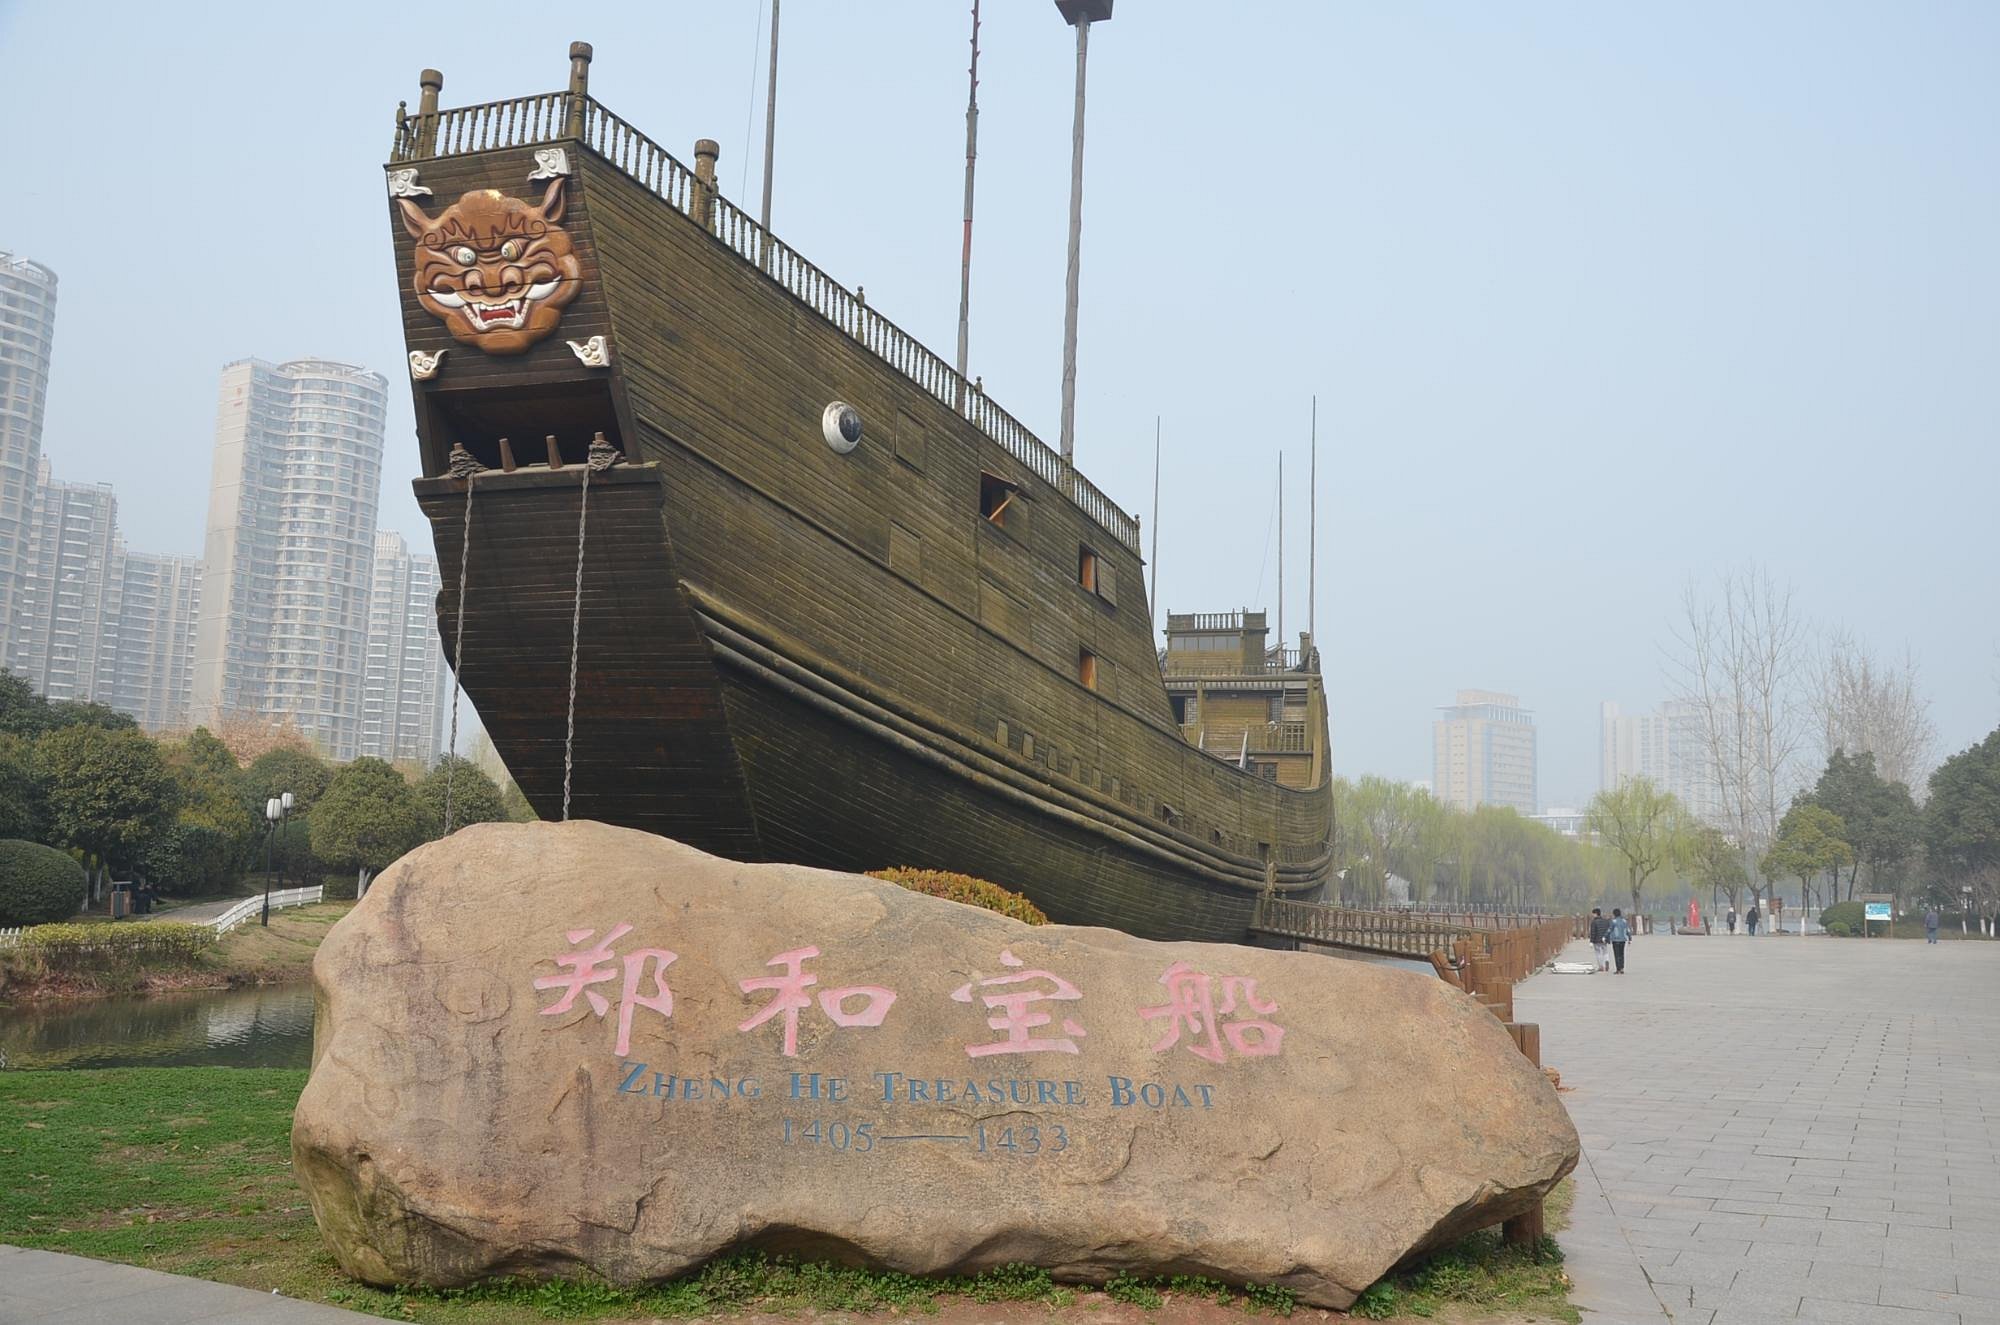 Nanjing e o estaleiro dos barcos do Tesouro